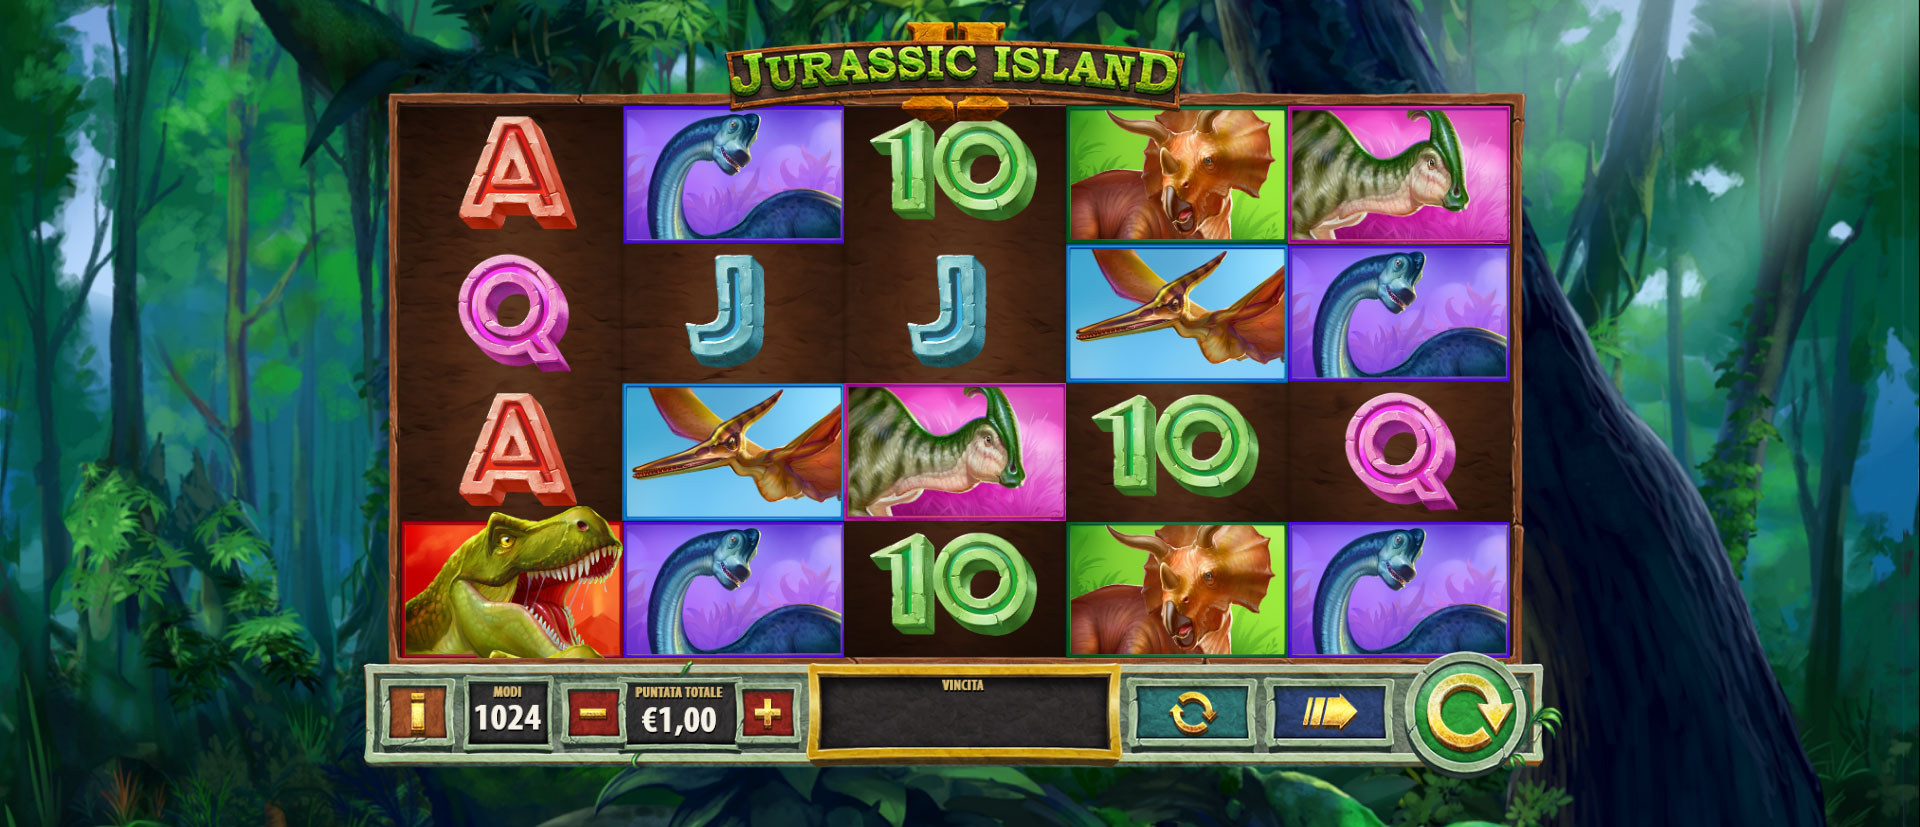 schermata del gioco slot machine Jurassic Island II